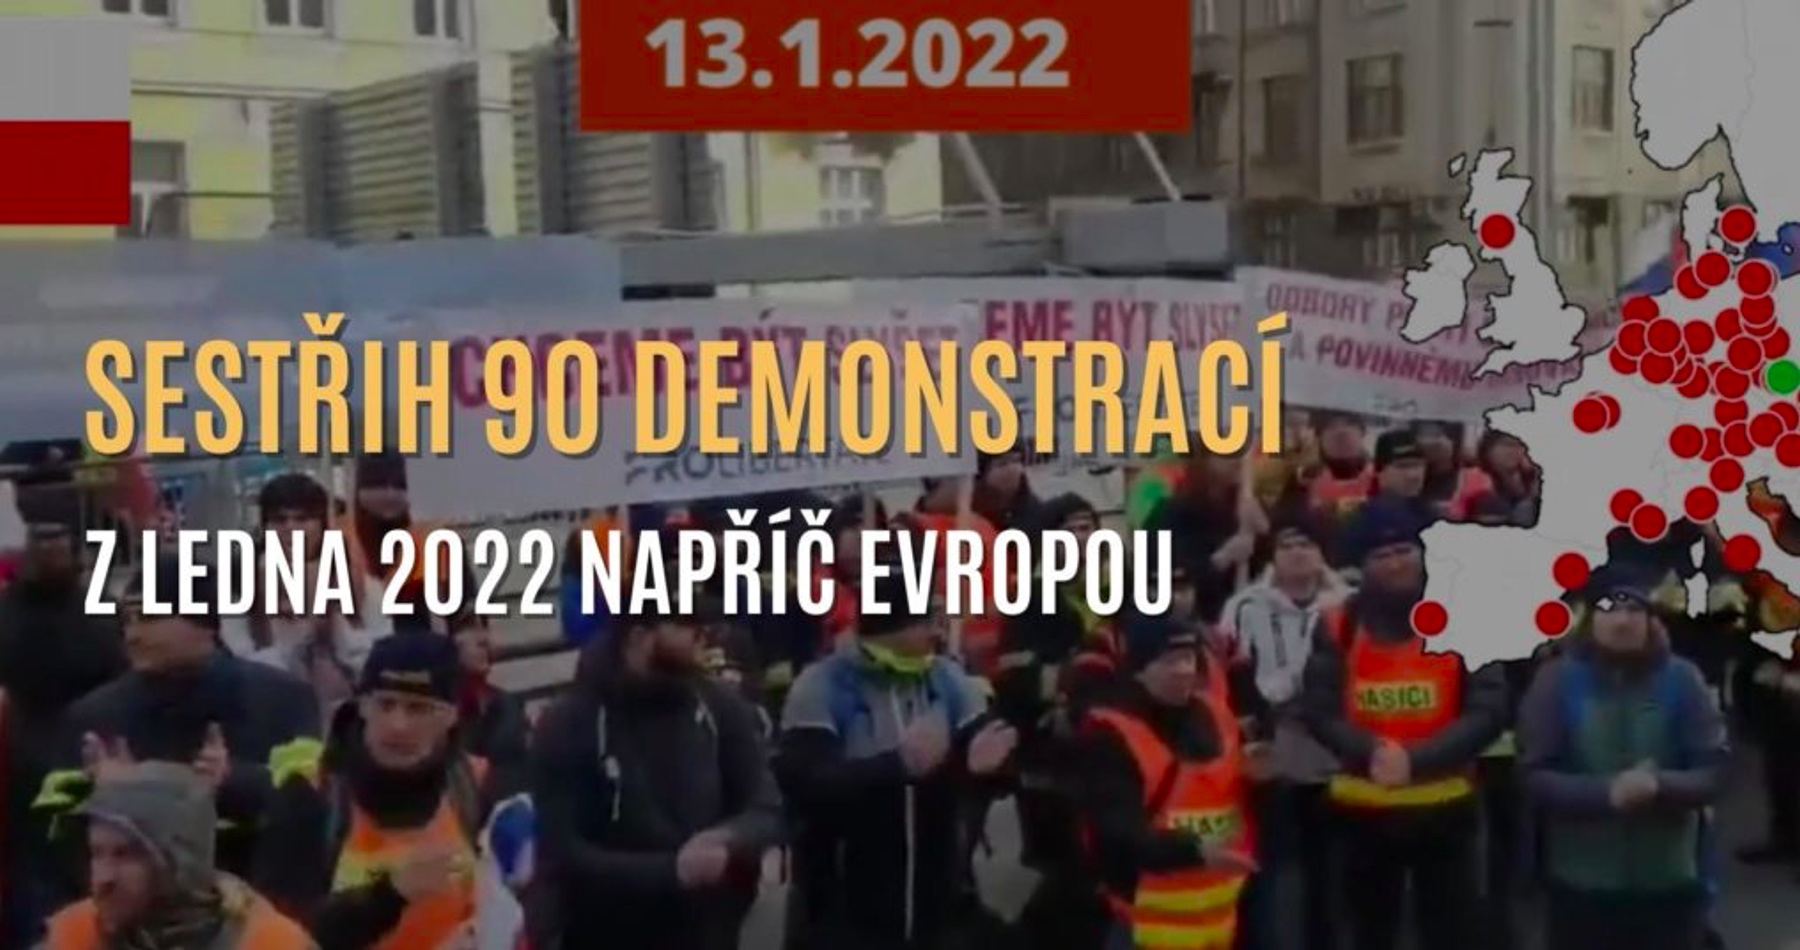 VIDEO: Sestřih 90 demonstrací za život bez podmínek z ledna 2022 napříč Evropou